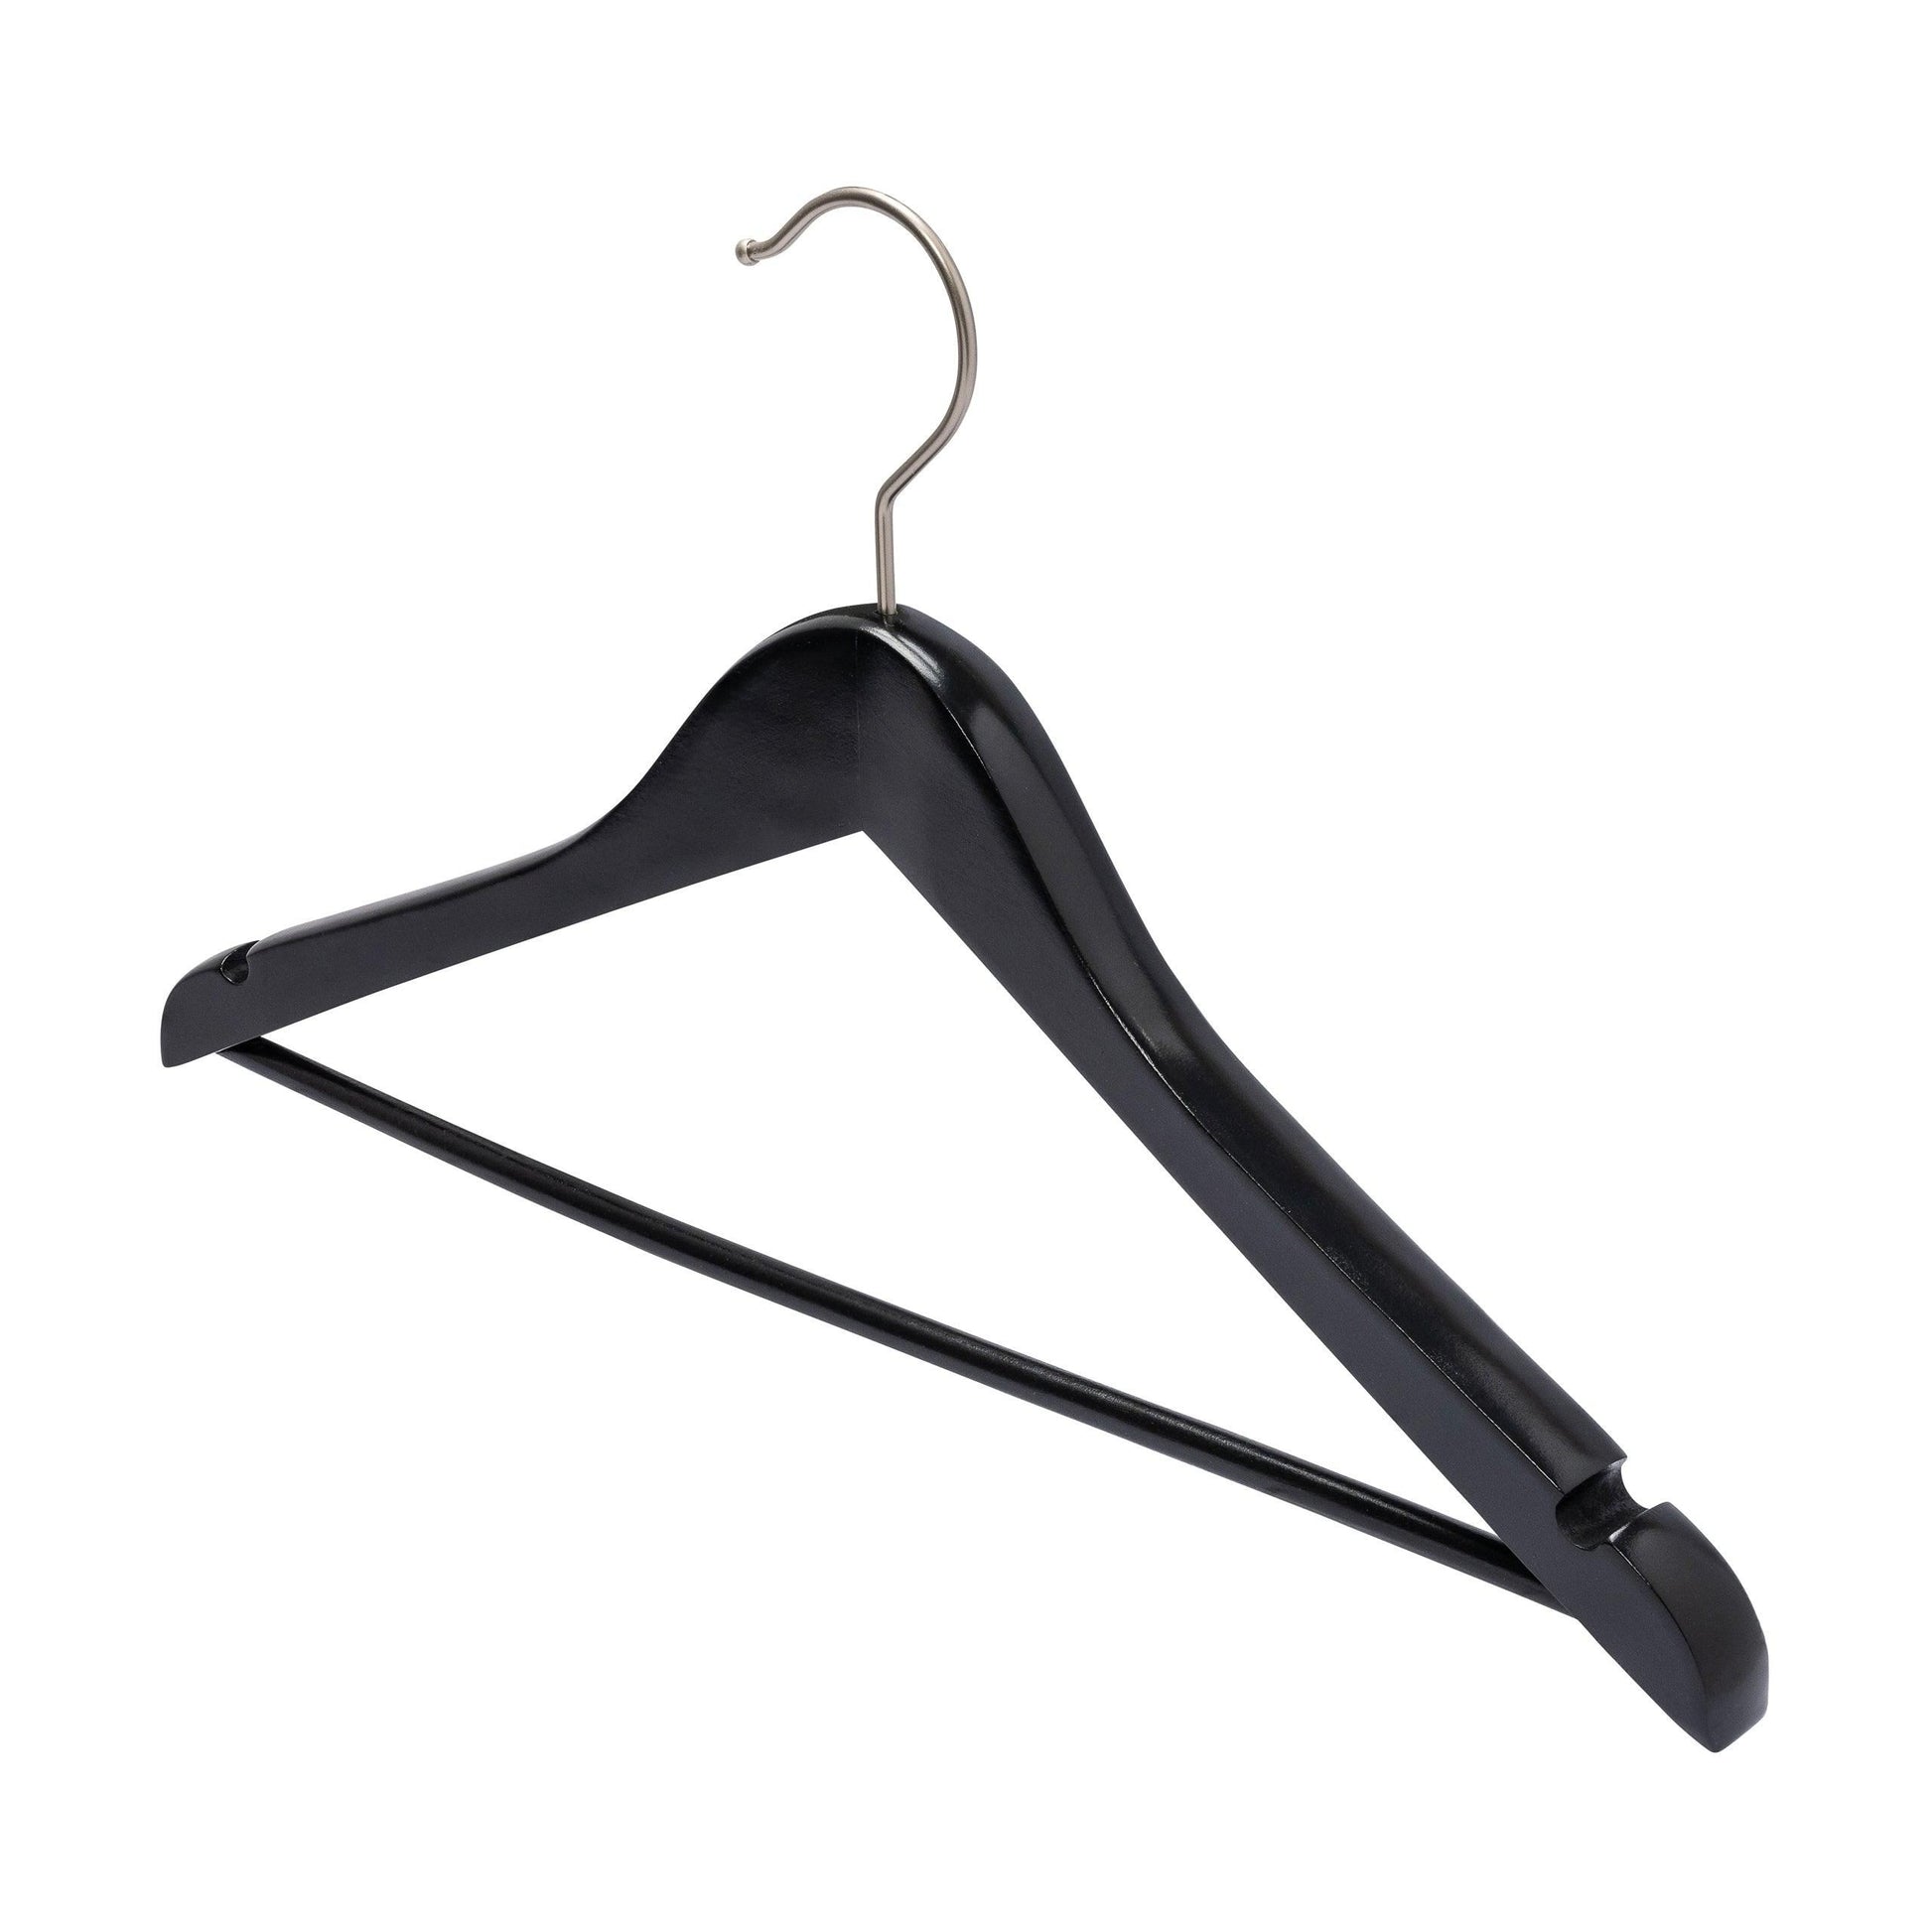 Black Deluxe Wooden Coat Hanger With Bar - 43cm X 20mm Thick (Sold in 10/20/50) - Hangersforless